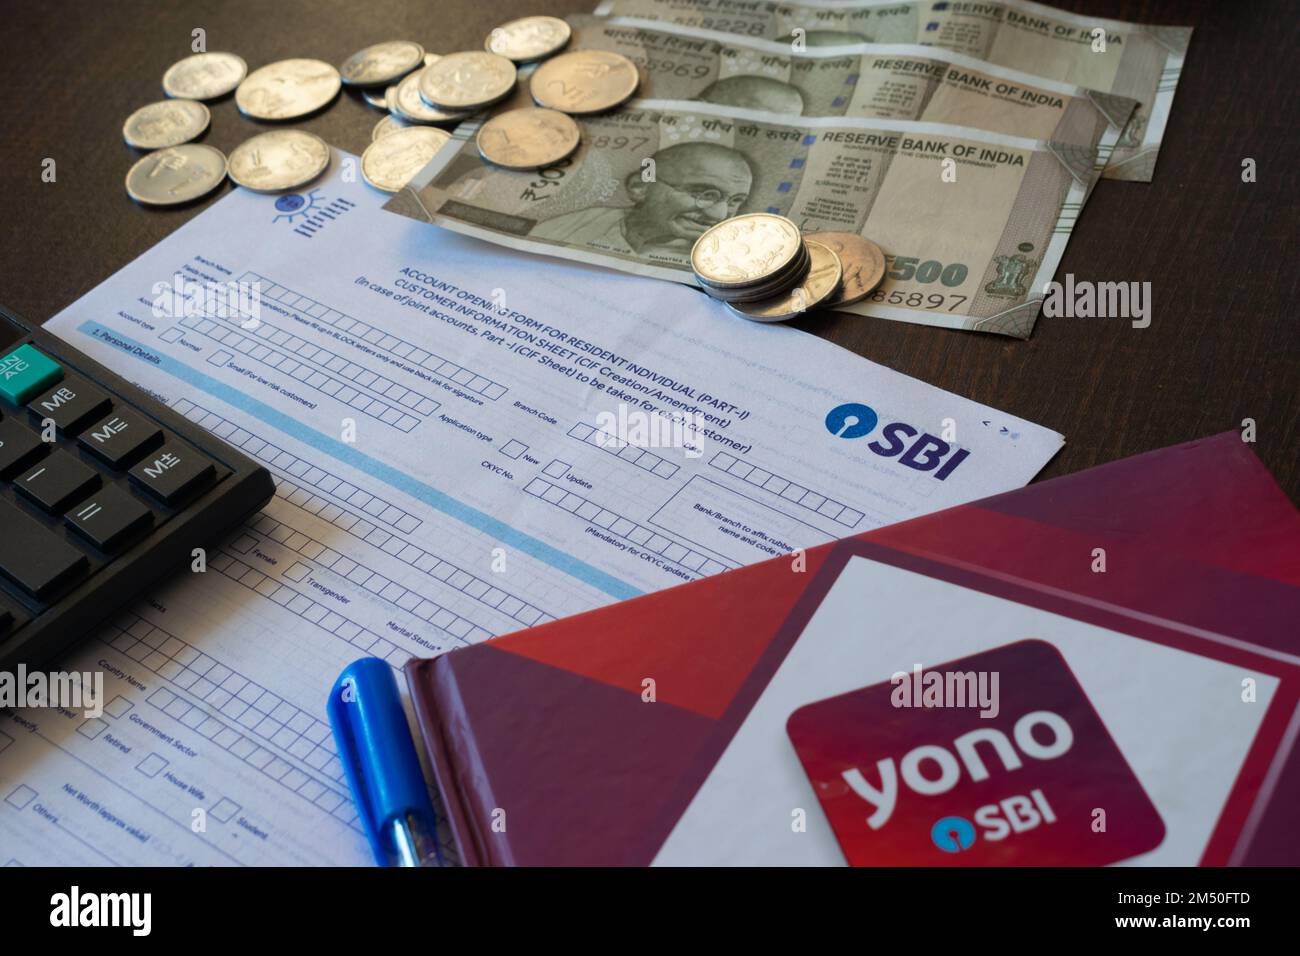 Mumbai, India - 19 ottobre 2021, immagine del modulo di apertura del conto della Banca di Stato dell'India con contanti, calcolatrice, marca E penna DI YONO. Foto Stock